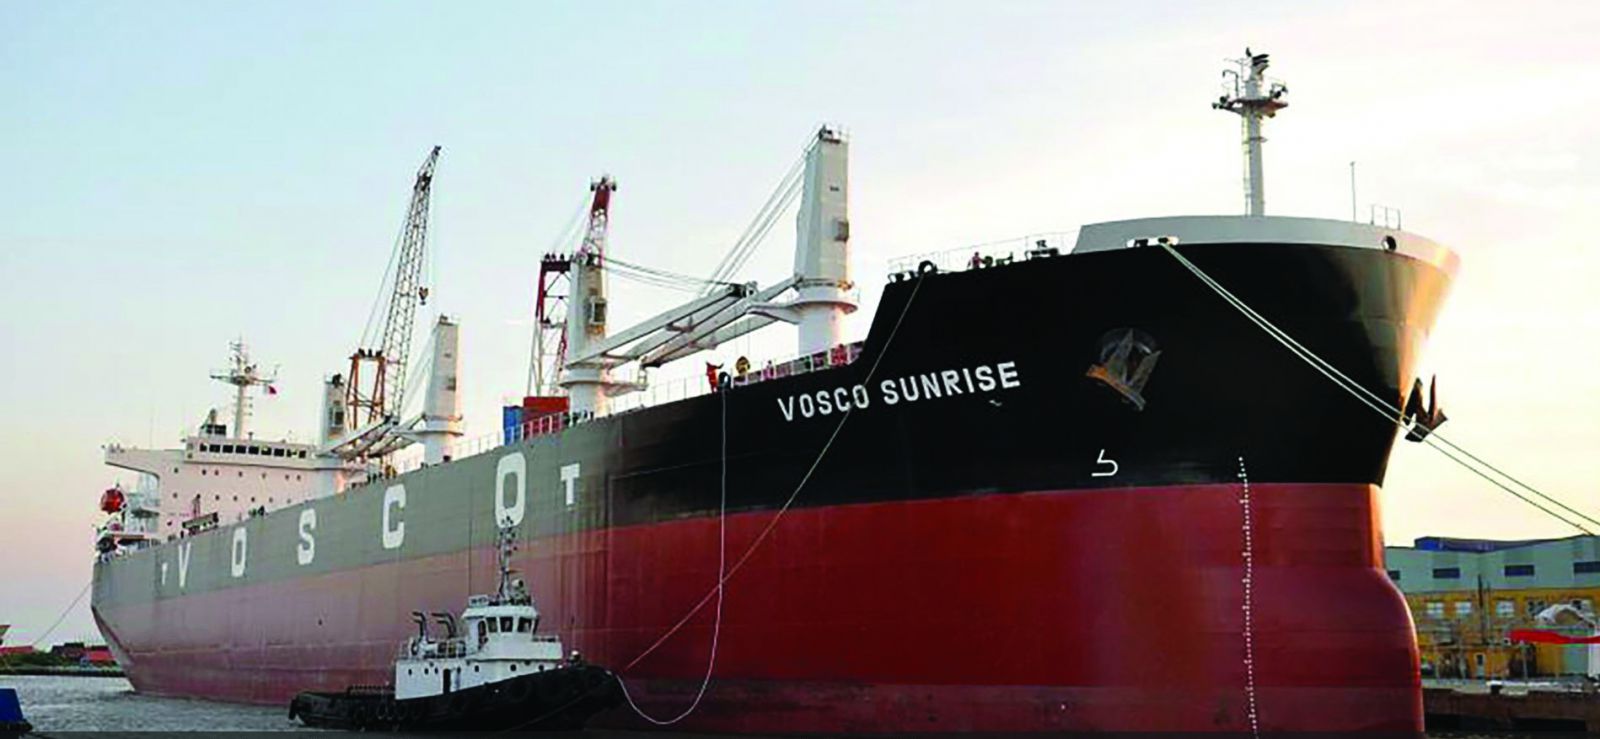  Sản lượng hàng container thông qua cảng biển của Việt Nam năm 2021 đạt 23,8 triệu Teus, tăng 6% so với cùng kỳ năm 2020.